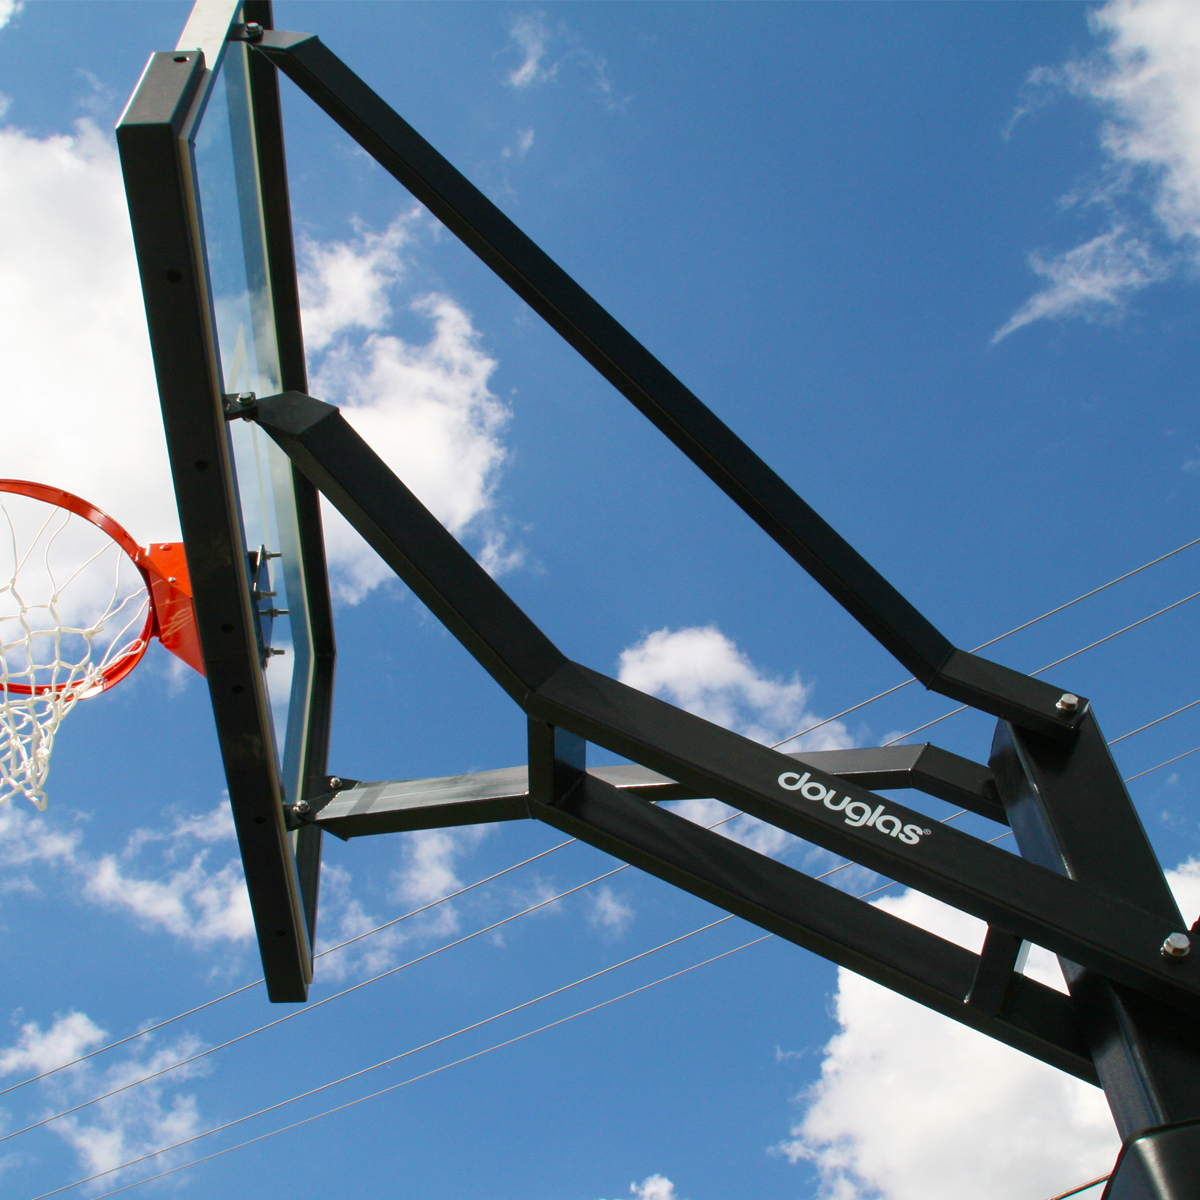 Never-Miss Basketball Hoop